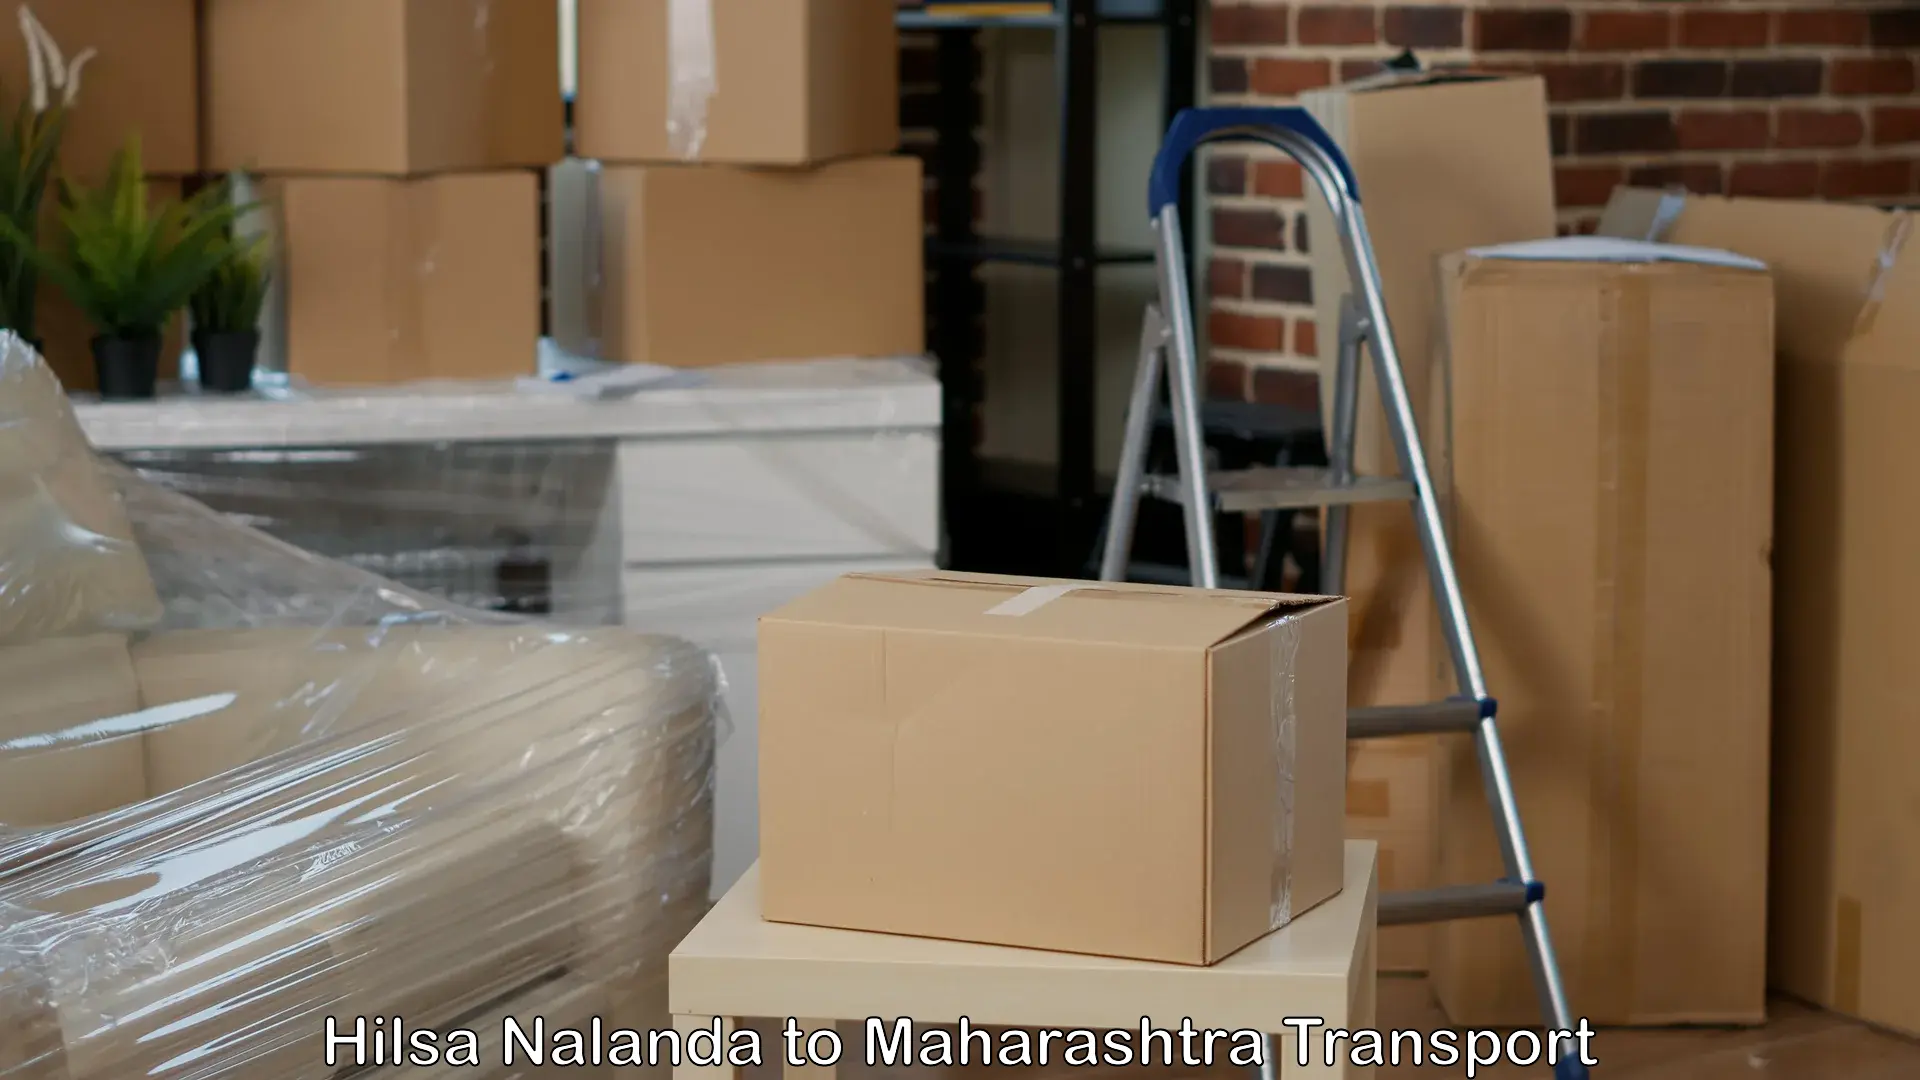 Daily parcel service transport Hilsa Nalanda to Maharashtra